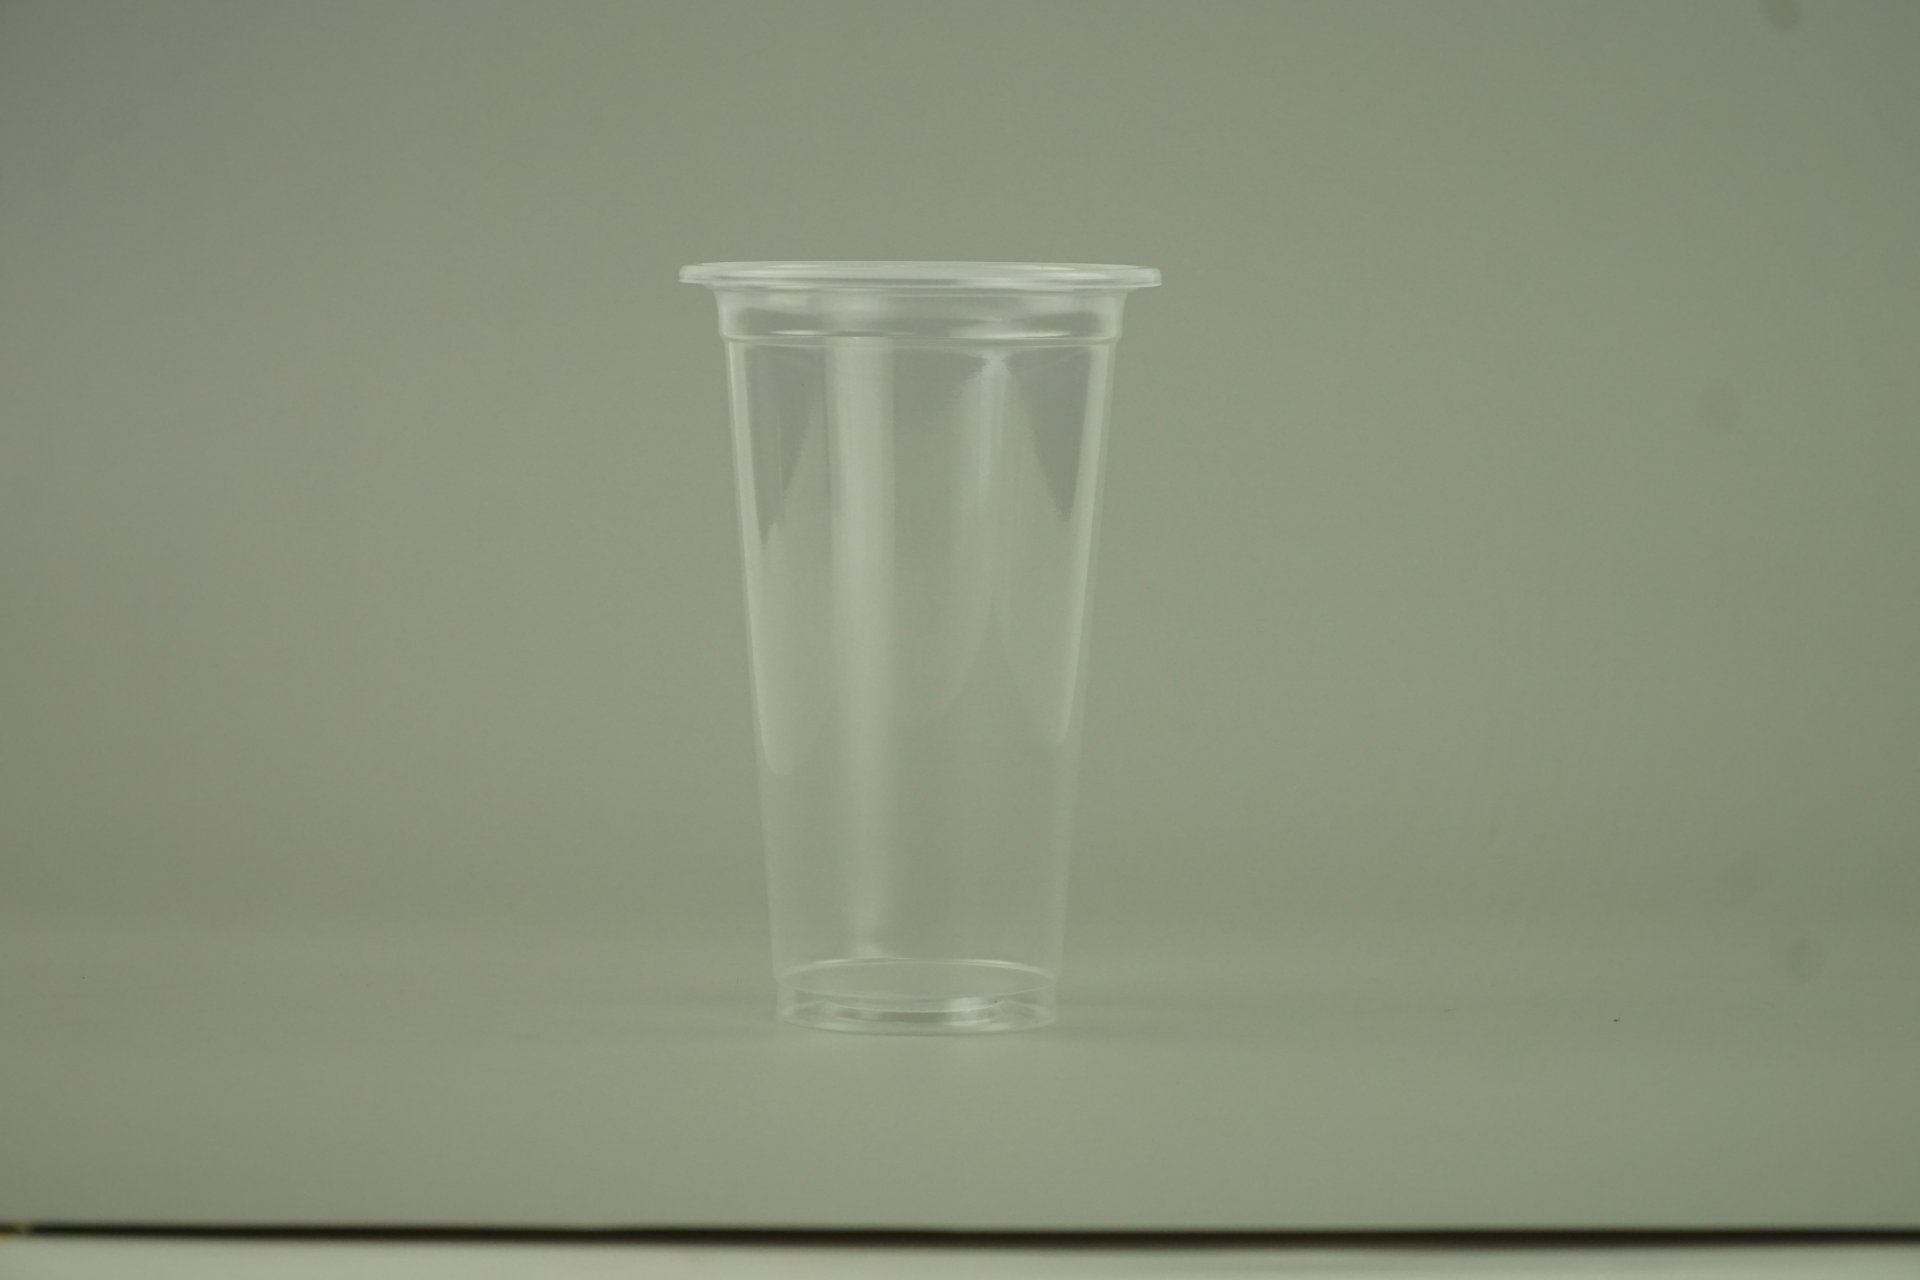 แก้วน้ำ 20 ออนซ์ แก้วพลาสติก PP เรียบใส รุ่นพิเศษ ปาก95mm.ขนาด 9.5x15 x6 cm.